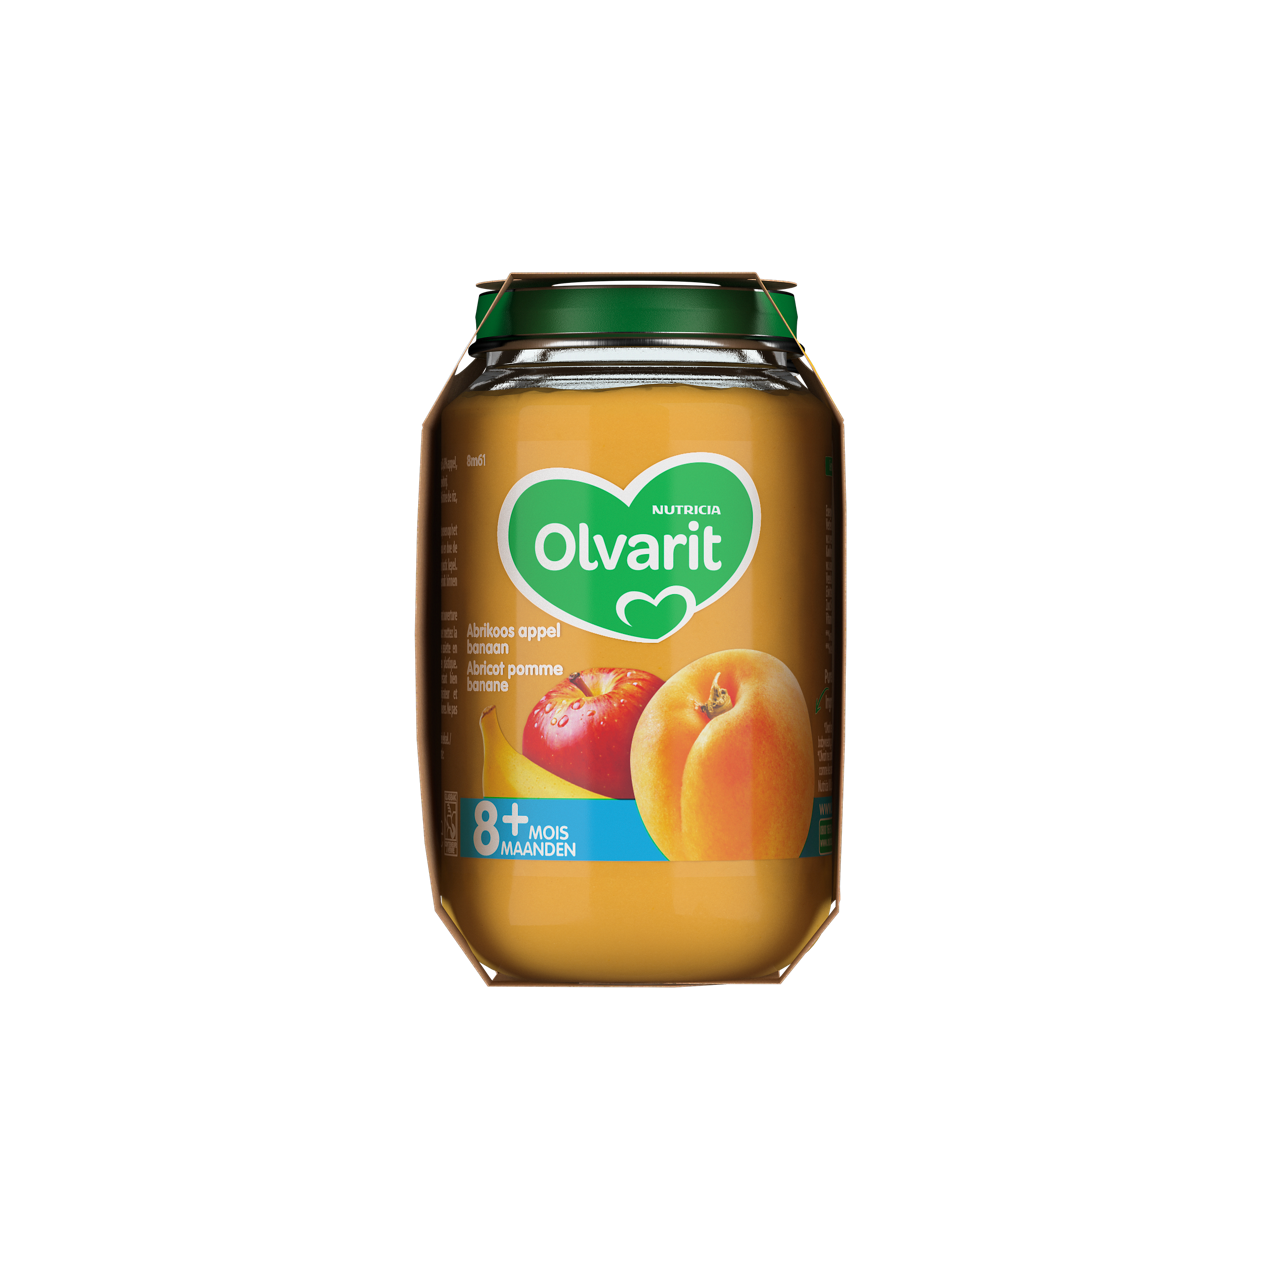 Olvarit Abricot Pomme Banane (200 g). Consultez notre site web Olvarit.be pour plus d'info sur alimentation pour bébé et les produits Olvarit.